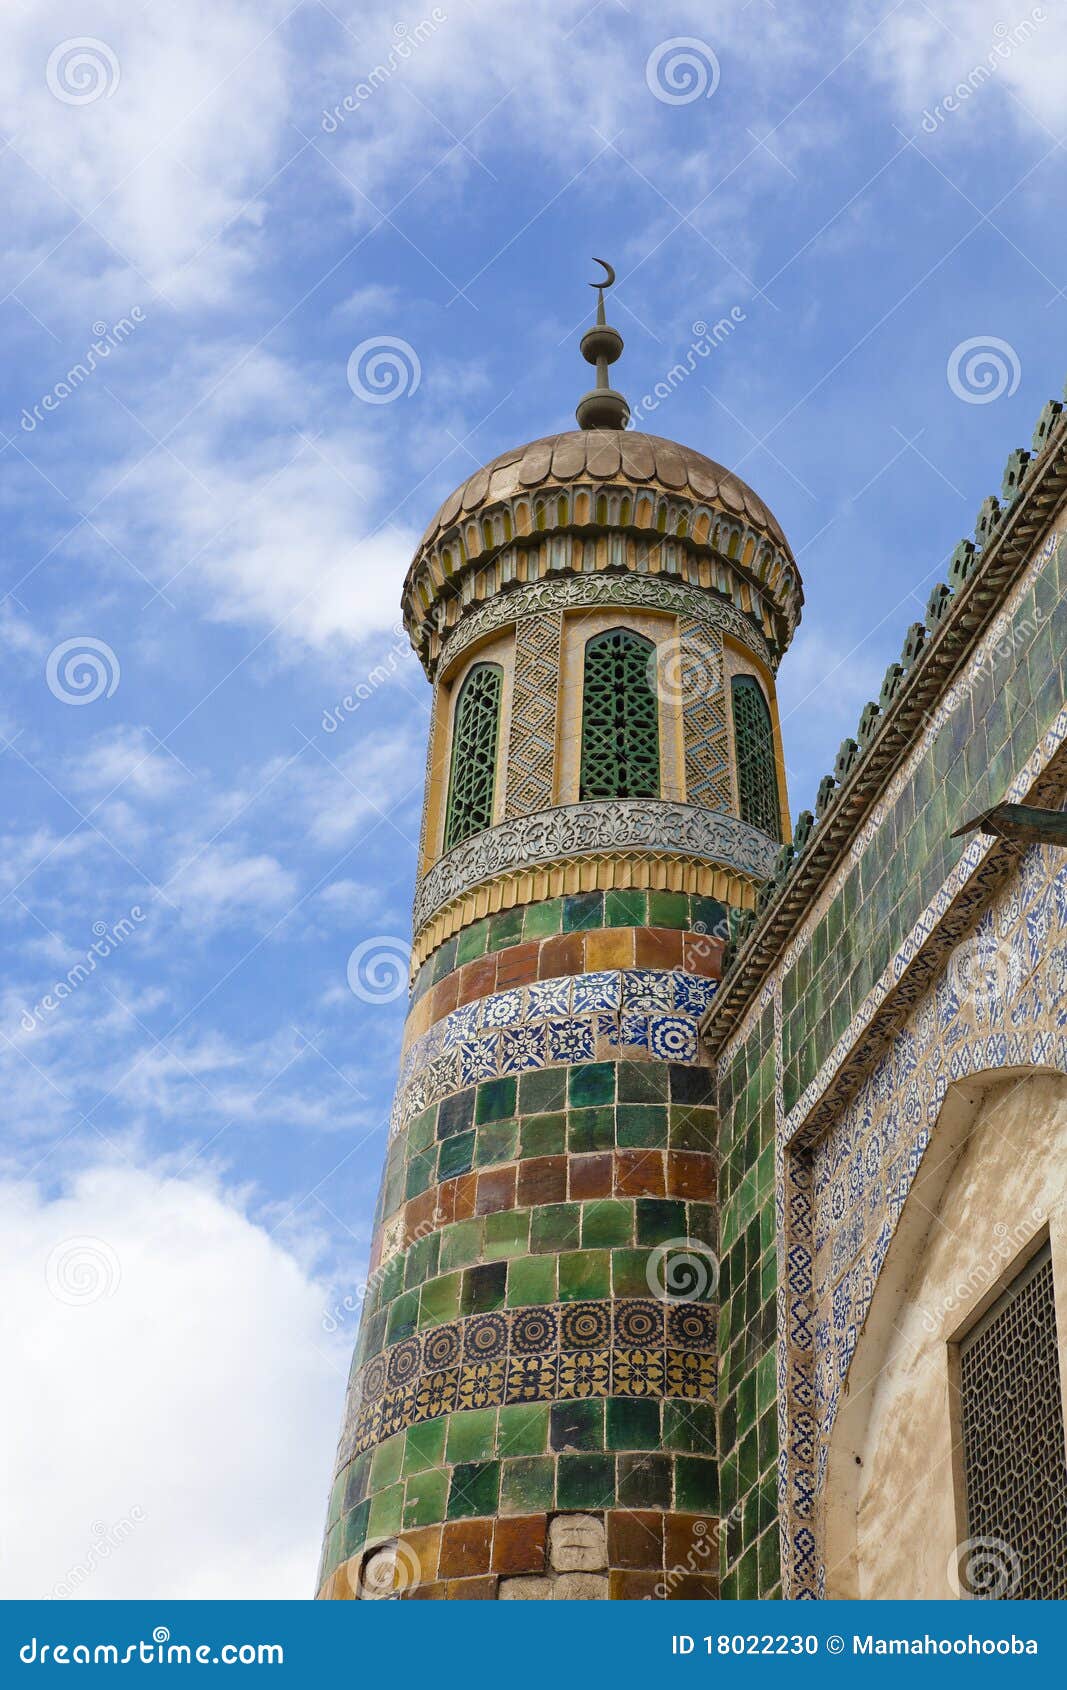 xinjiang: islamic minaret